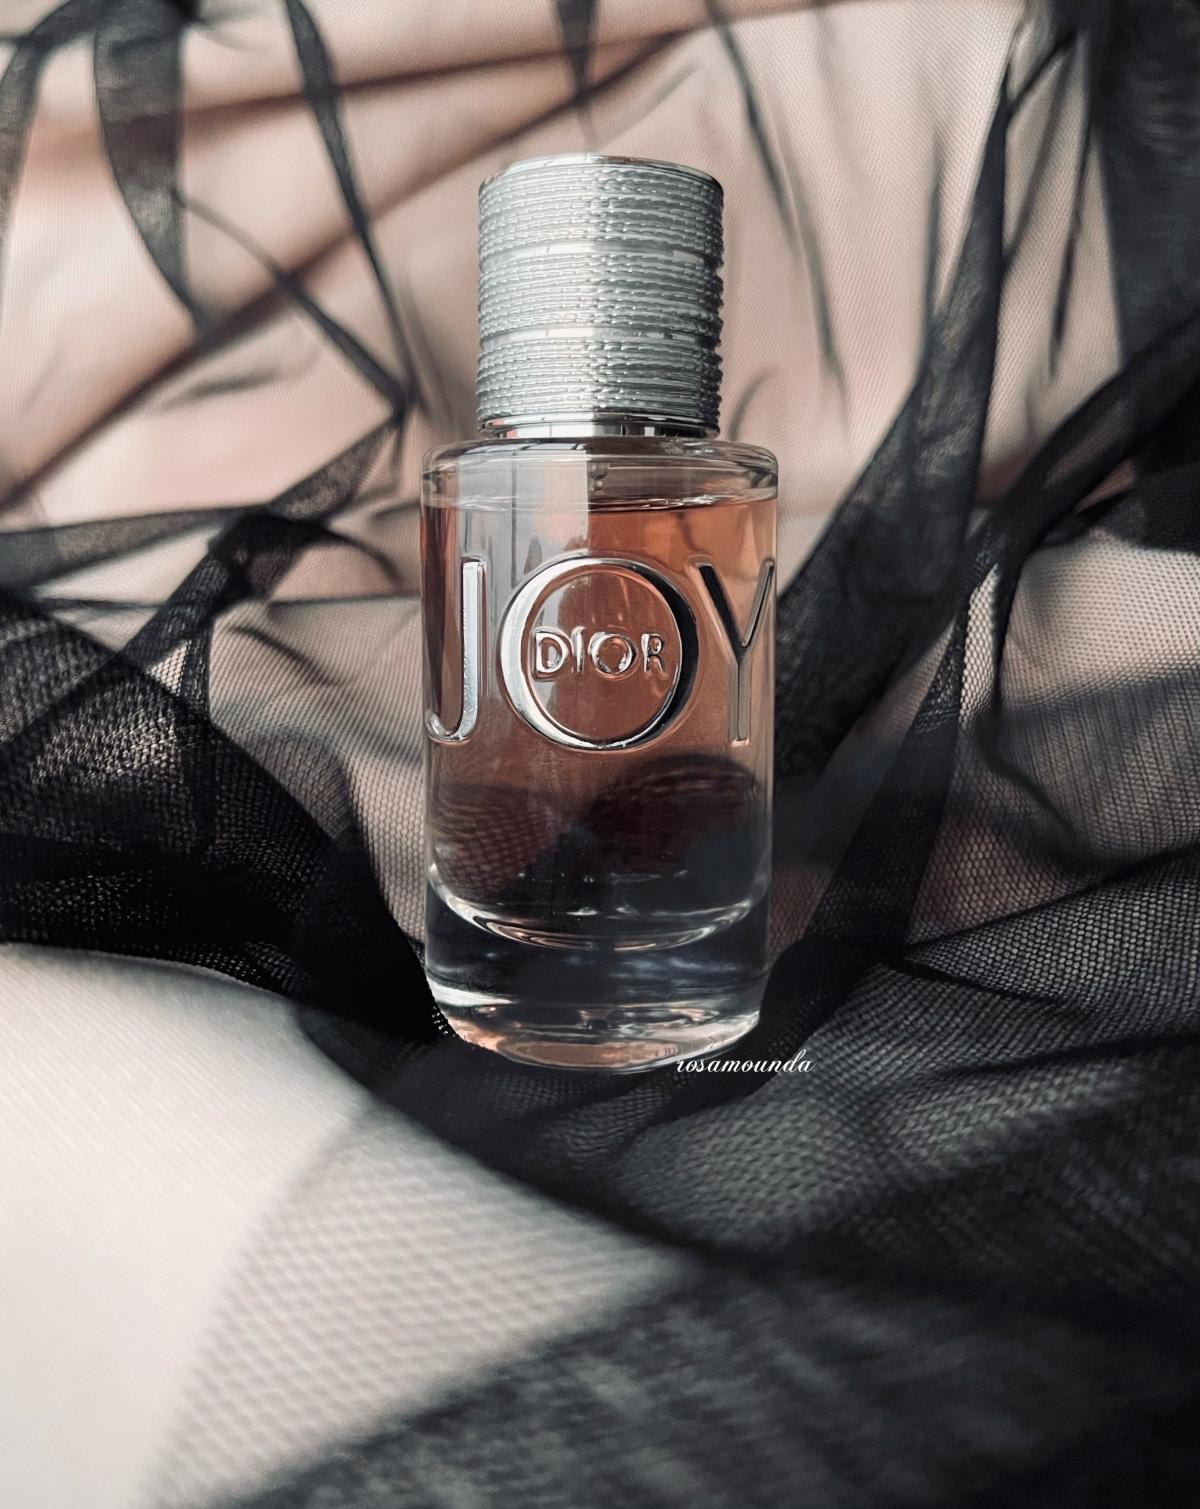 Joy by Dior Christian Dior άρωμα - ένα νέο άρωμα για γυναίκες 2018